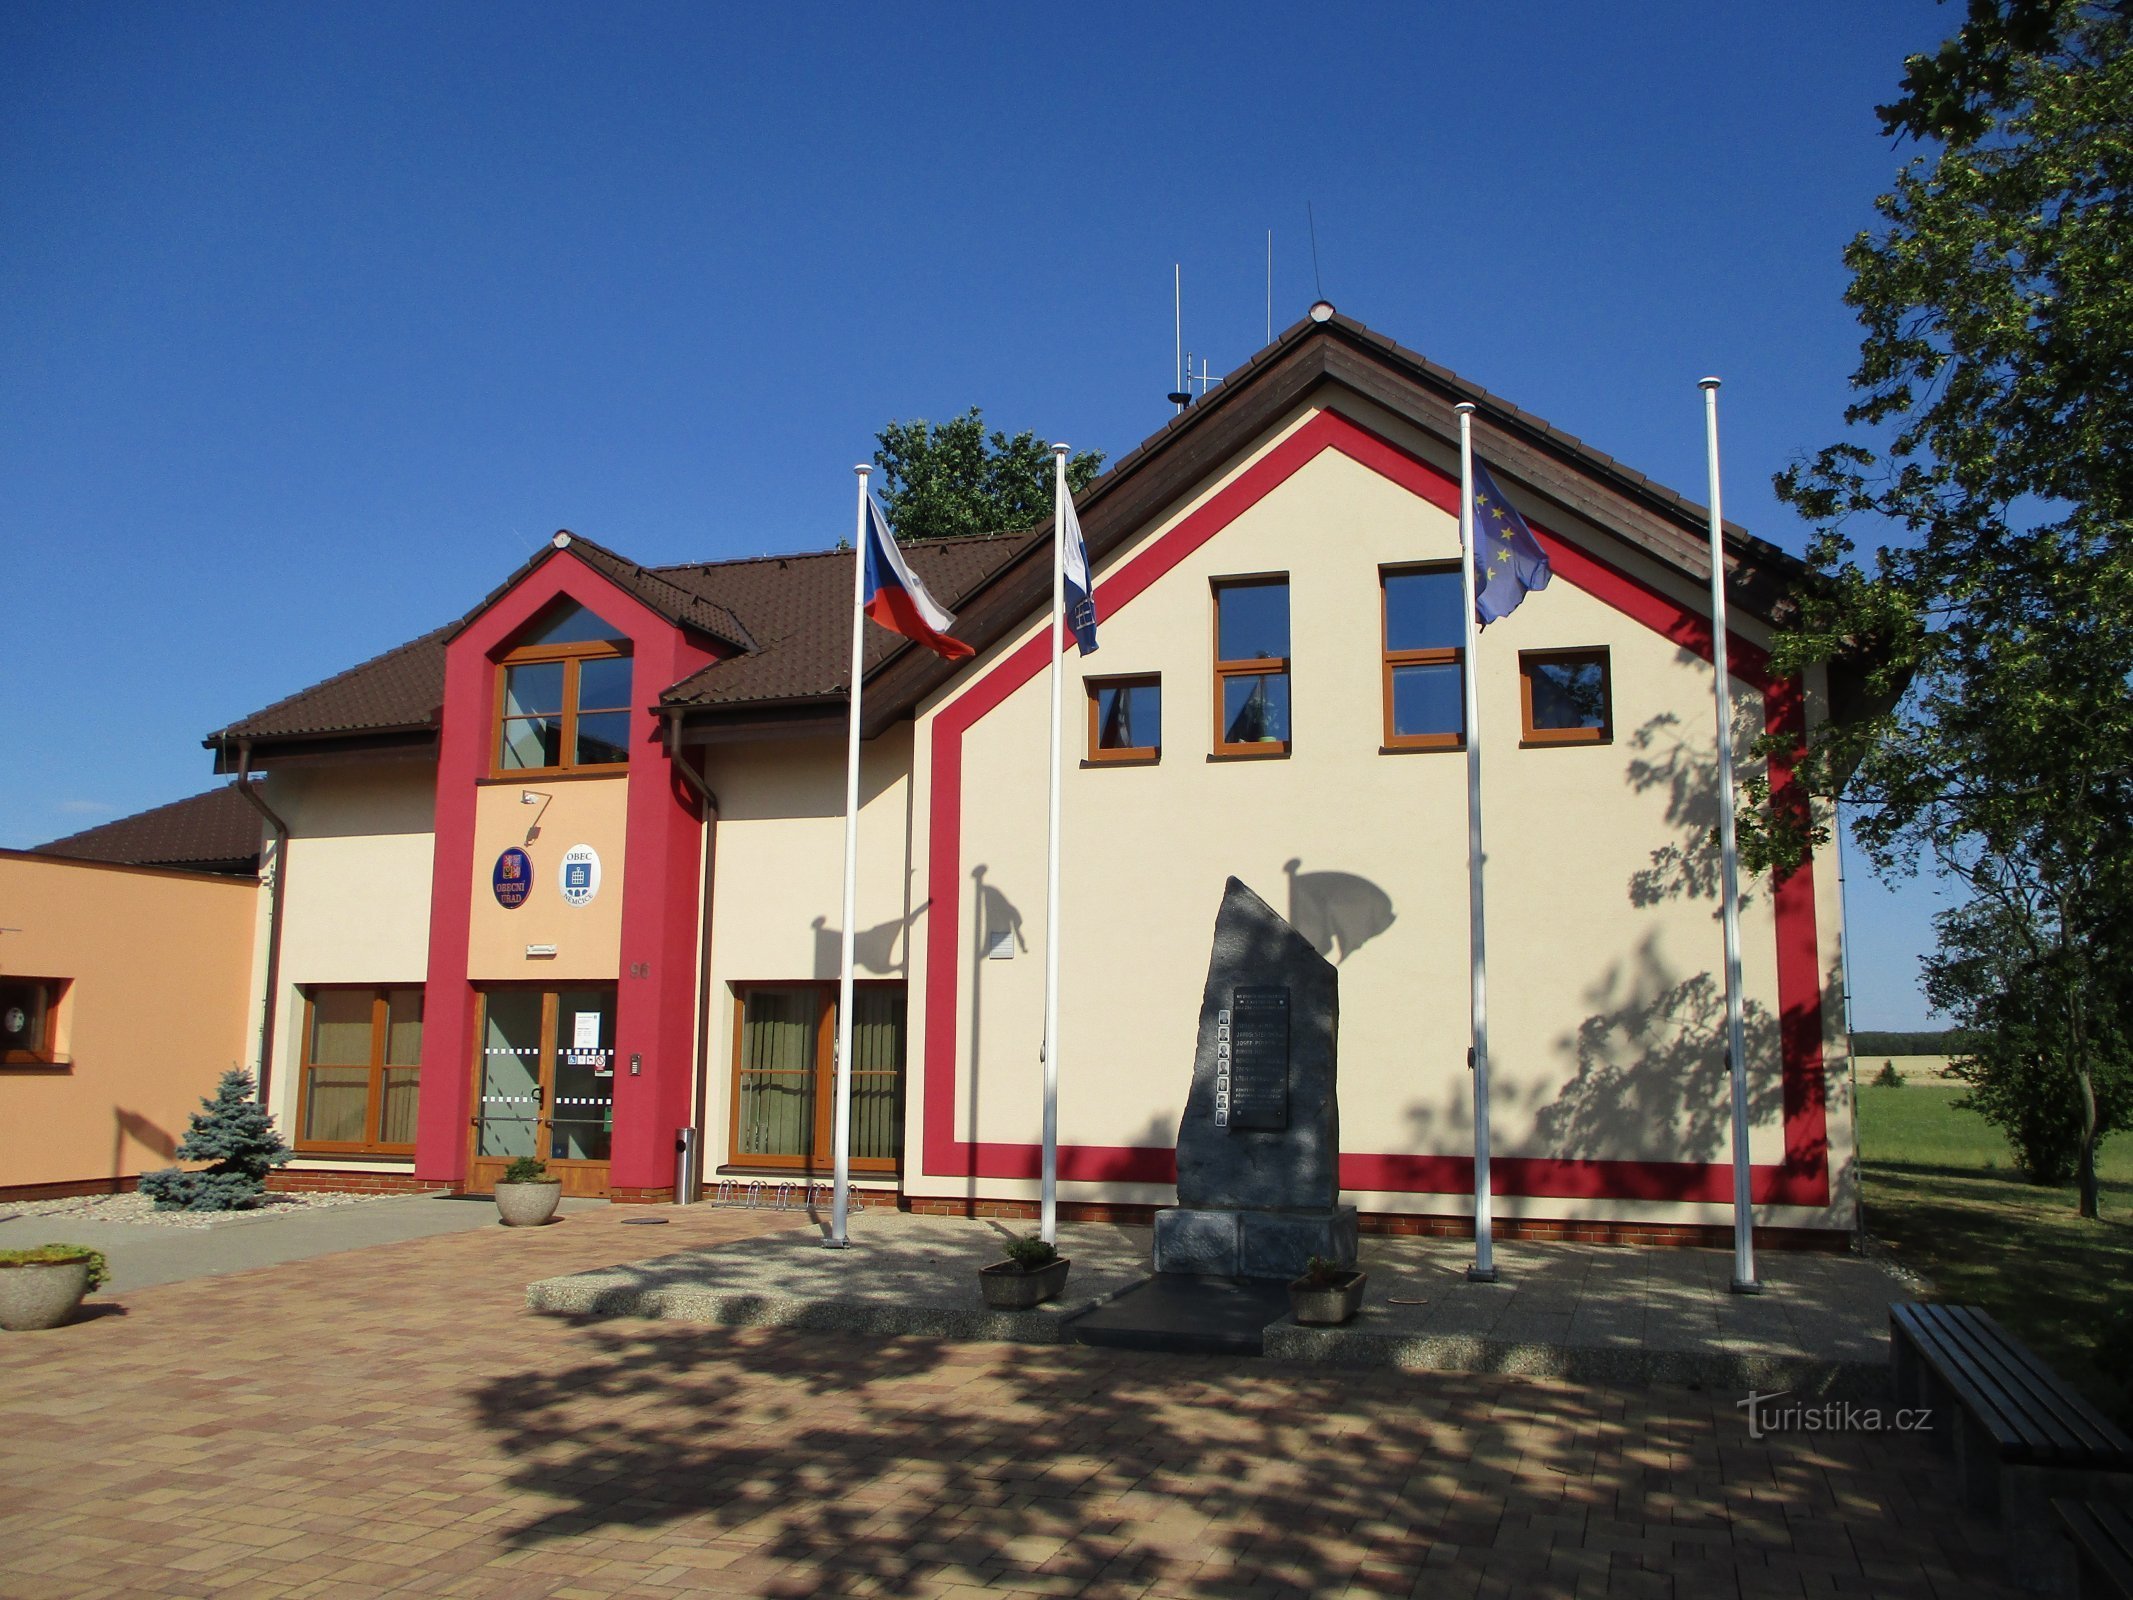 Biroul municipal (germană)